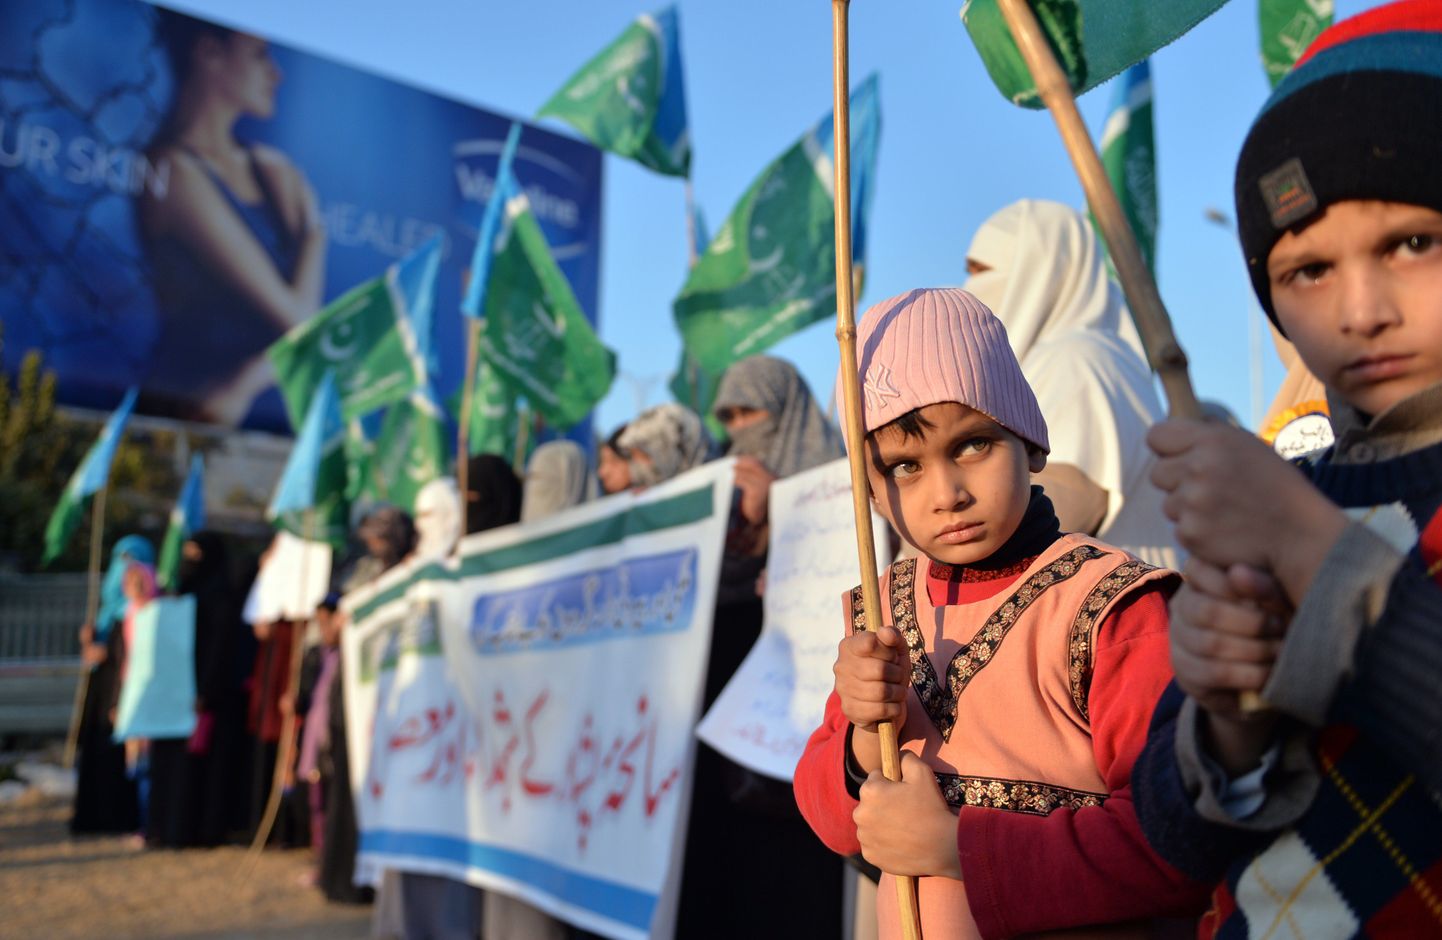 Lapsed hoiavad lippe 26. detsemrbil korraldatud meeleavaldusel Islamabadis, kus avaldati meelt Talibani korraldatud veresauna vastu sõjaväekoolis Peshawaris.